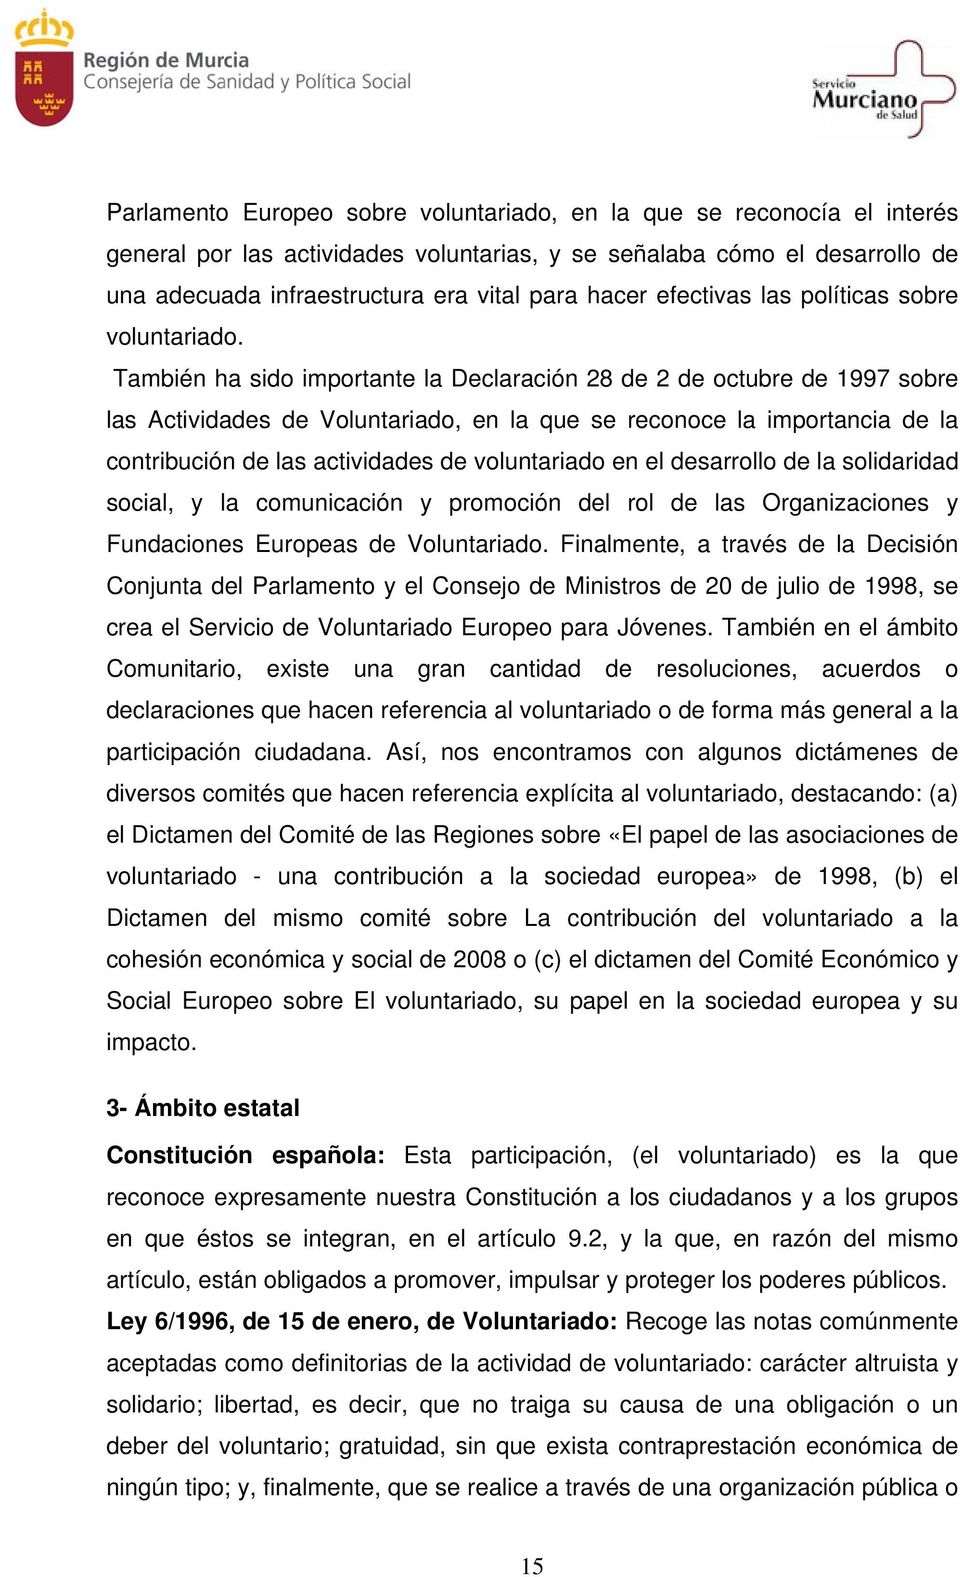 También ha sido importante la Declaración 28 de 2 de octubre de 1997 sobre las Actividades de Voluntariado, en la que se reconoce la importancia de la contribución de las actividades de voluntariado